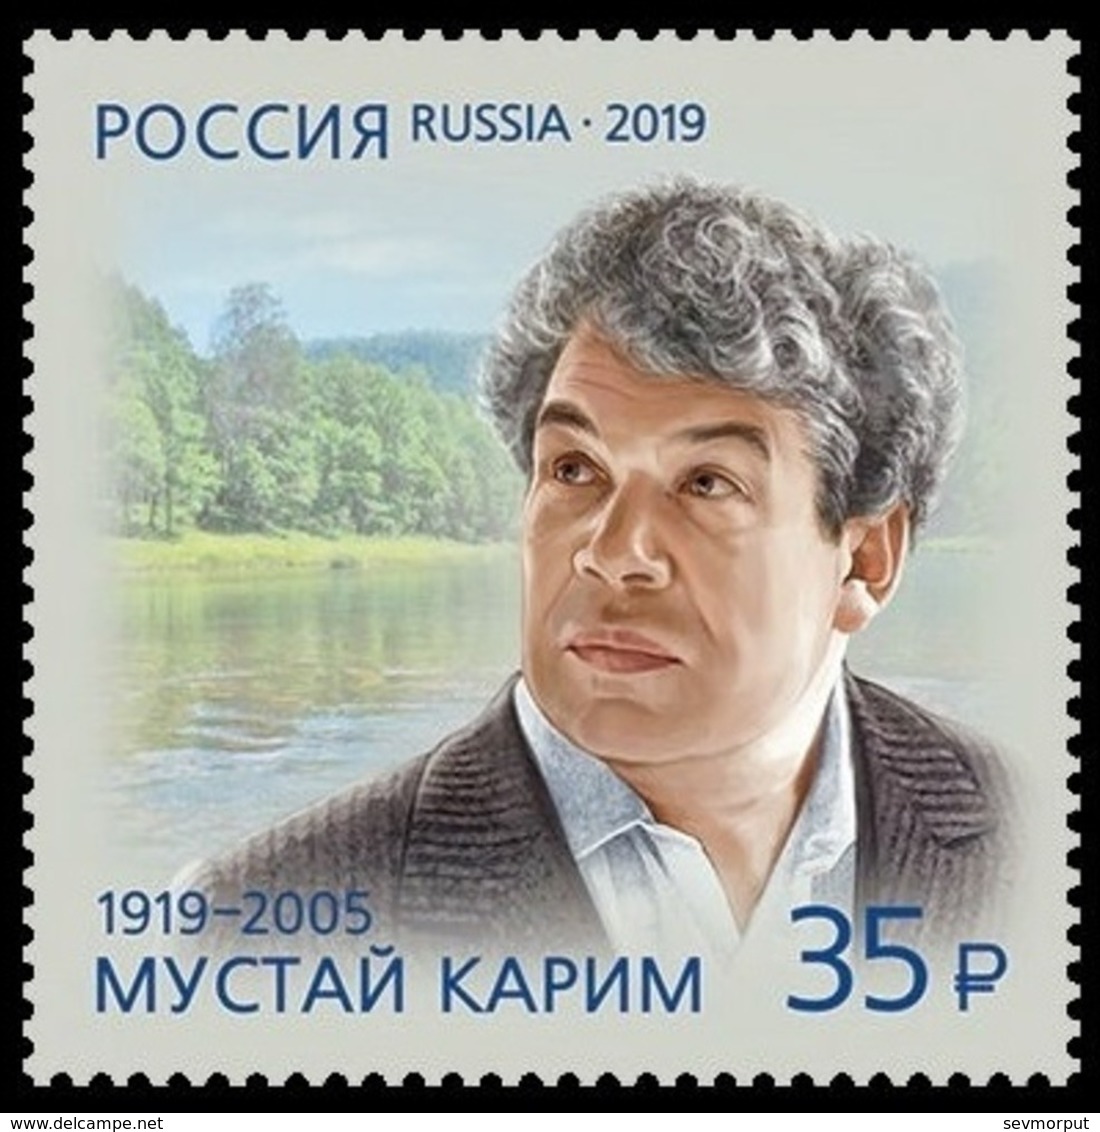 RUSSIA 2019 Stamp MNH VF ** Mi 2689 KARIM POET POETE LITERATURE 2472 - Neufs